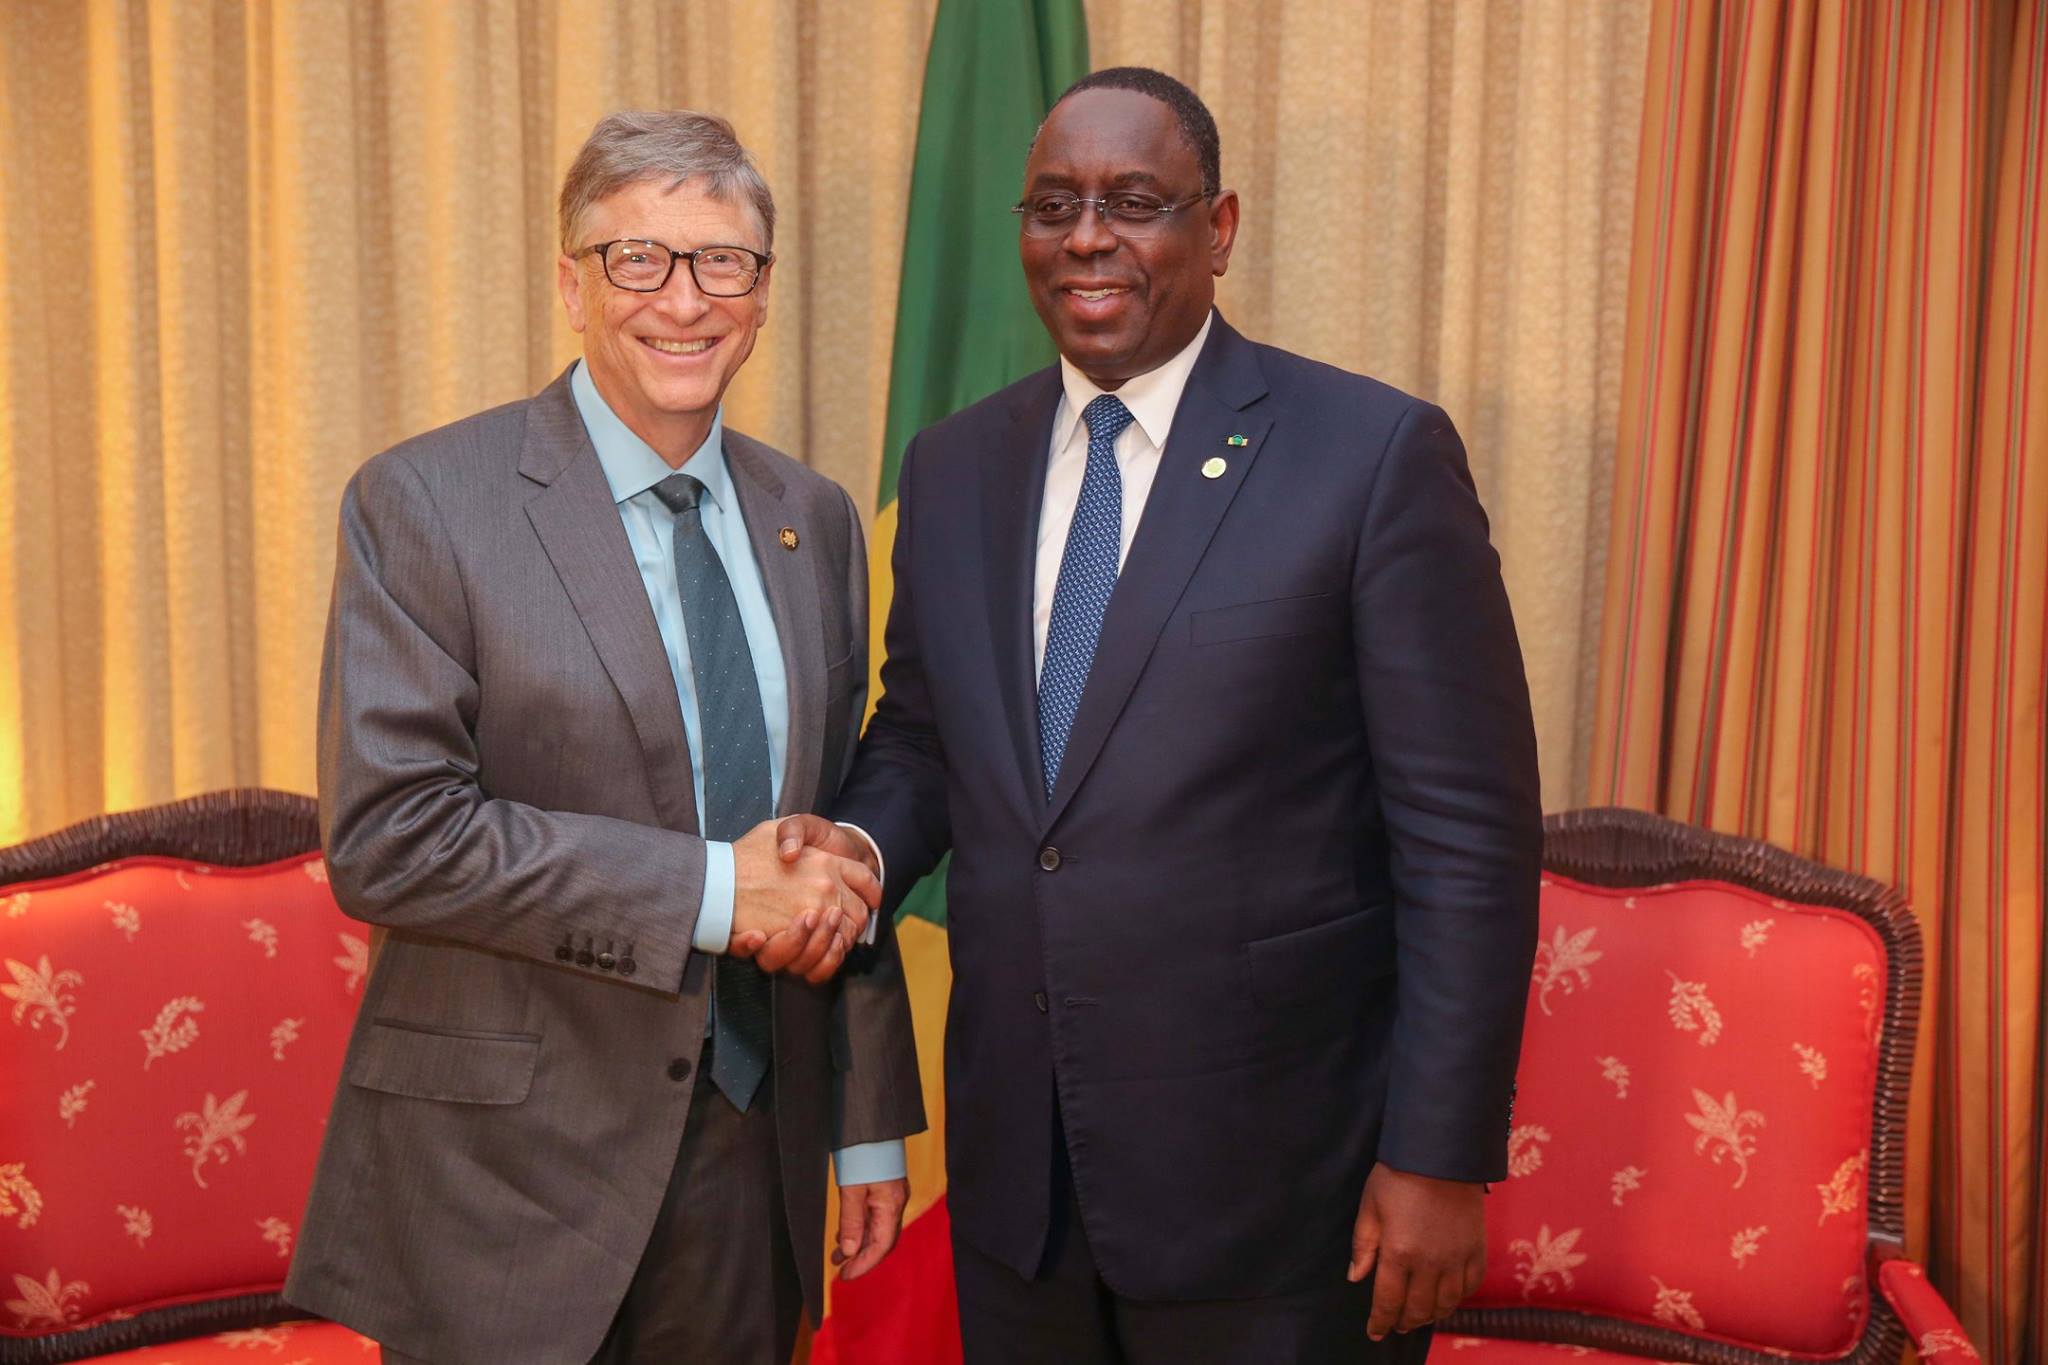 Audience : quel intérêt pour le Sénégal avec cette poignée de main entre Macky Sall et Bill Gates?